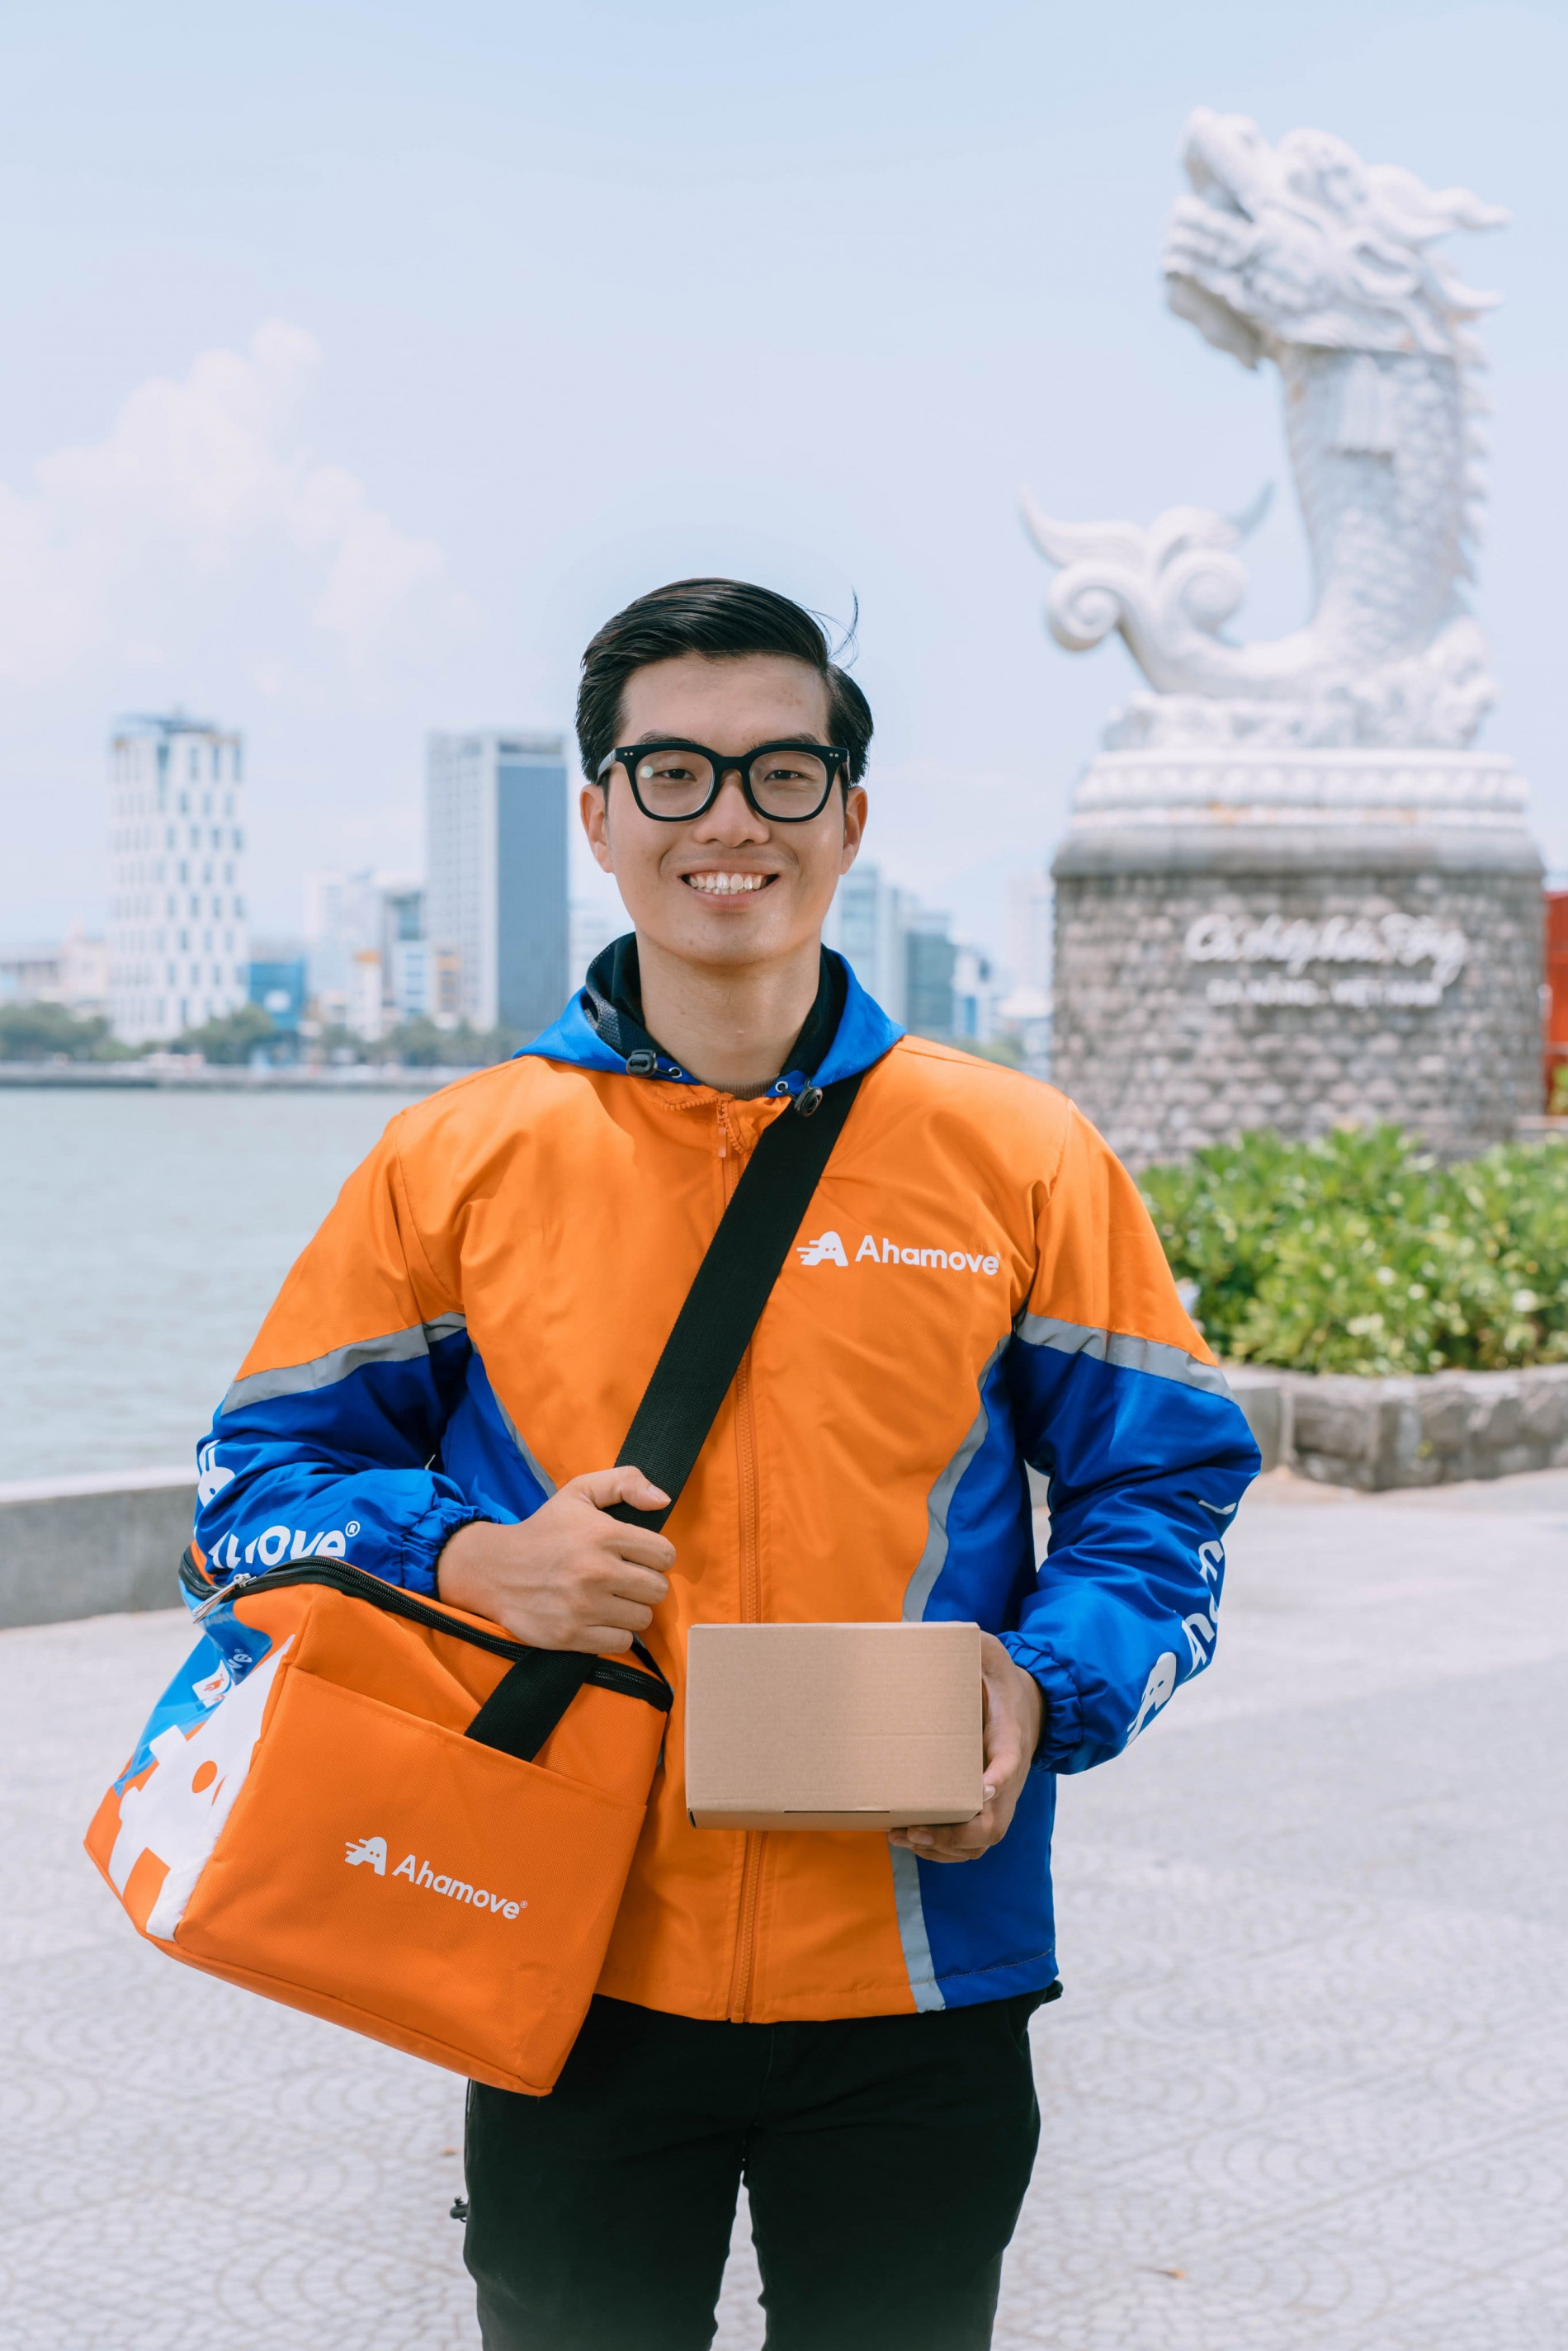 Dịch vụ giao hàng ‘xanh’ AhaFast nổi bật trên đường phố Đà Nẵng